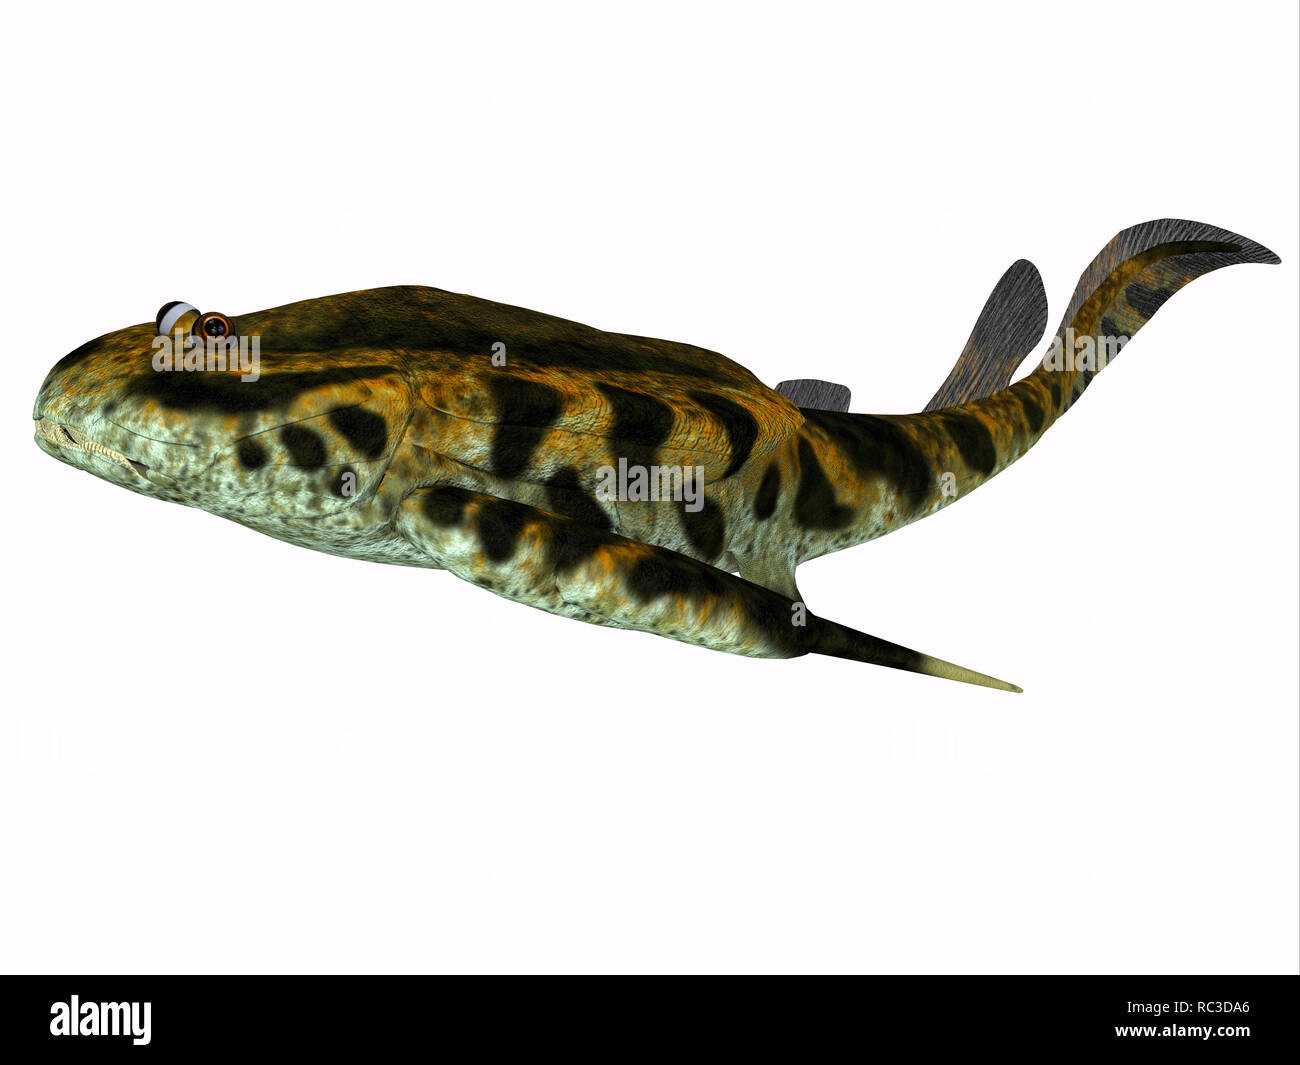 Pescado - Bothriolepis Bothriolepis era un pescado placoderm acuáticos que vivieron durante el Período Devoniano en agua dulce y ambientes marinos cercanos a la costa. Foto de stock